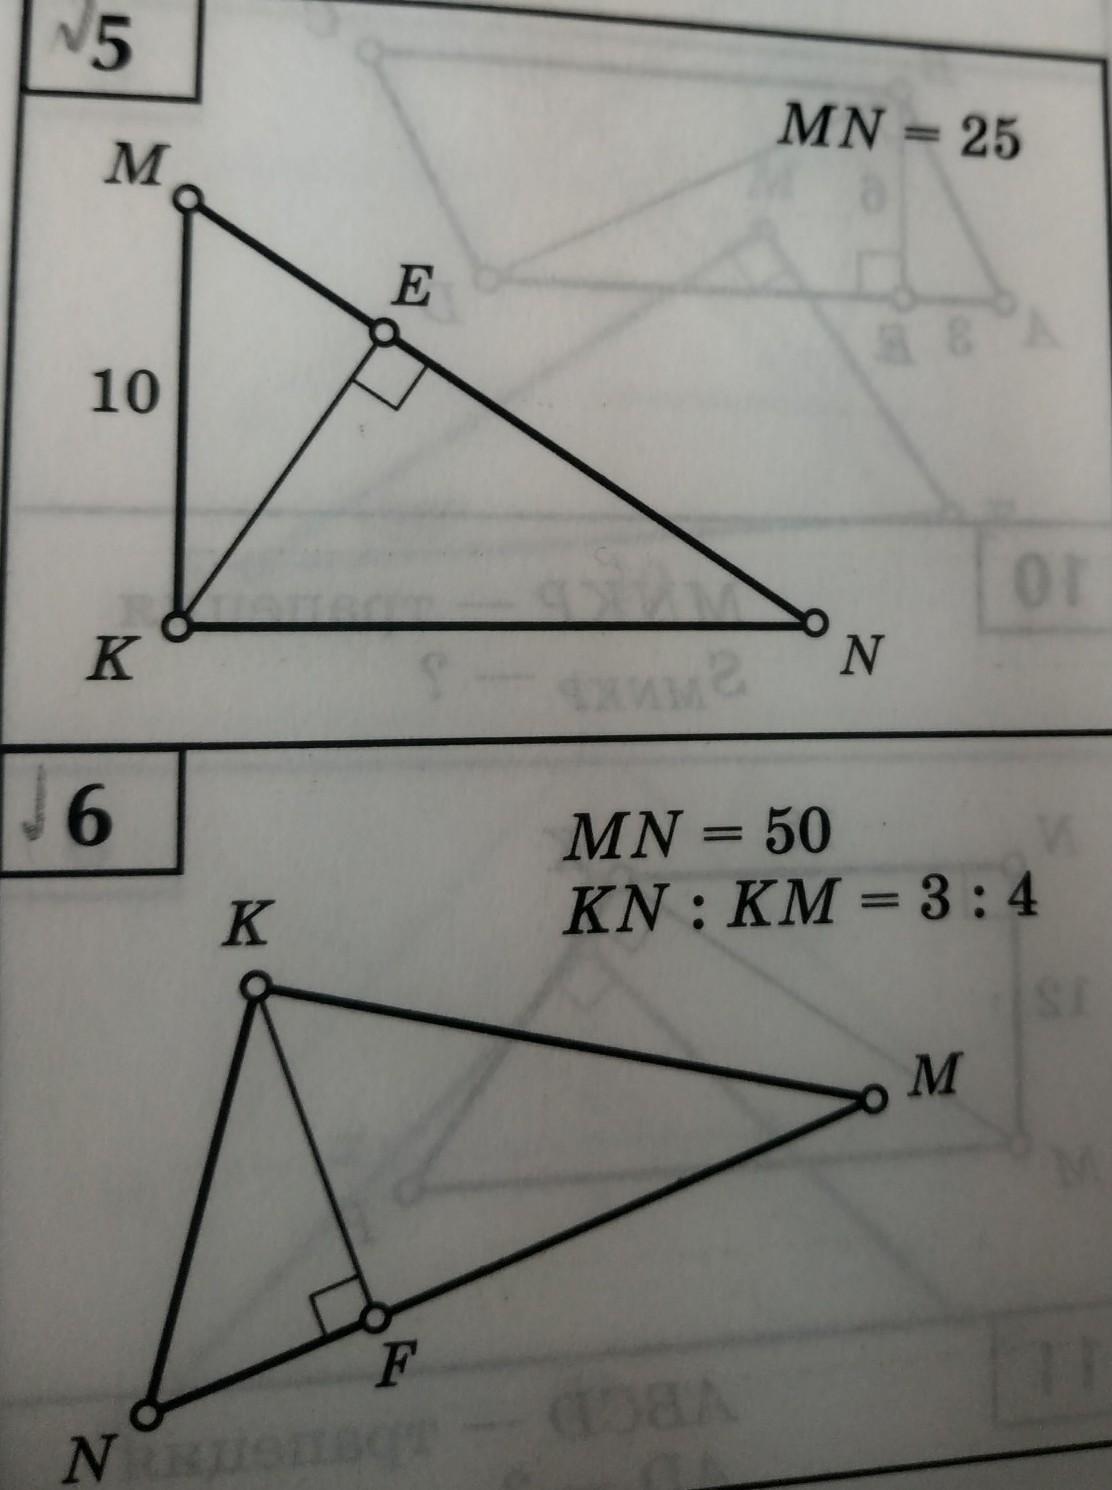 Mn 26 10. Найдите неизвестные элементы треугольника. Найдите неизвестные линейные элементы. Найдите неизвестные линейные элементы треугольника. Найдите неизвестные элементы треугольника МНК.